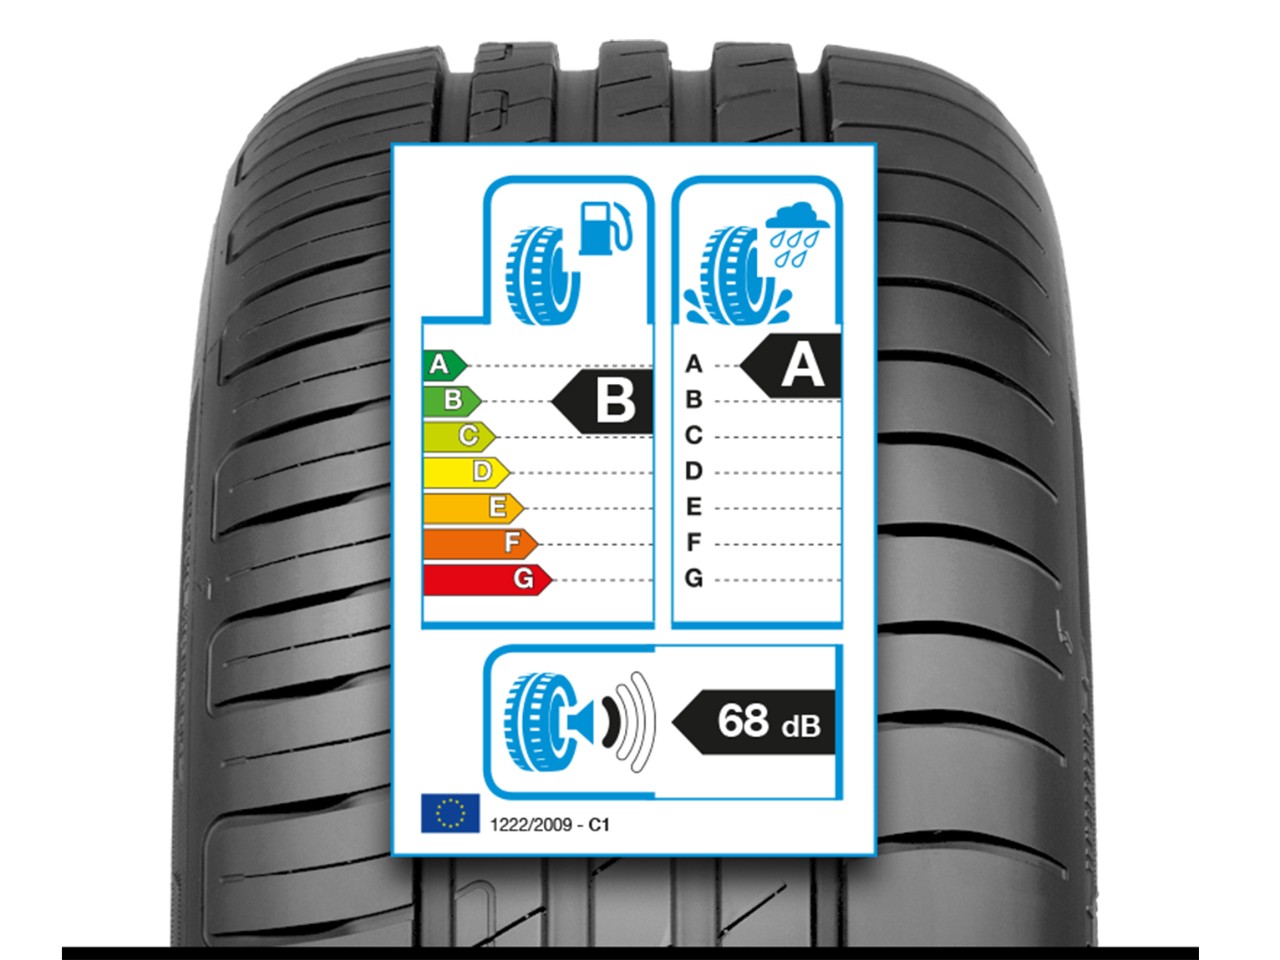 EU Tyre Label Explained